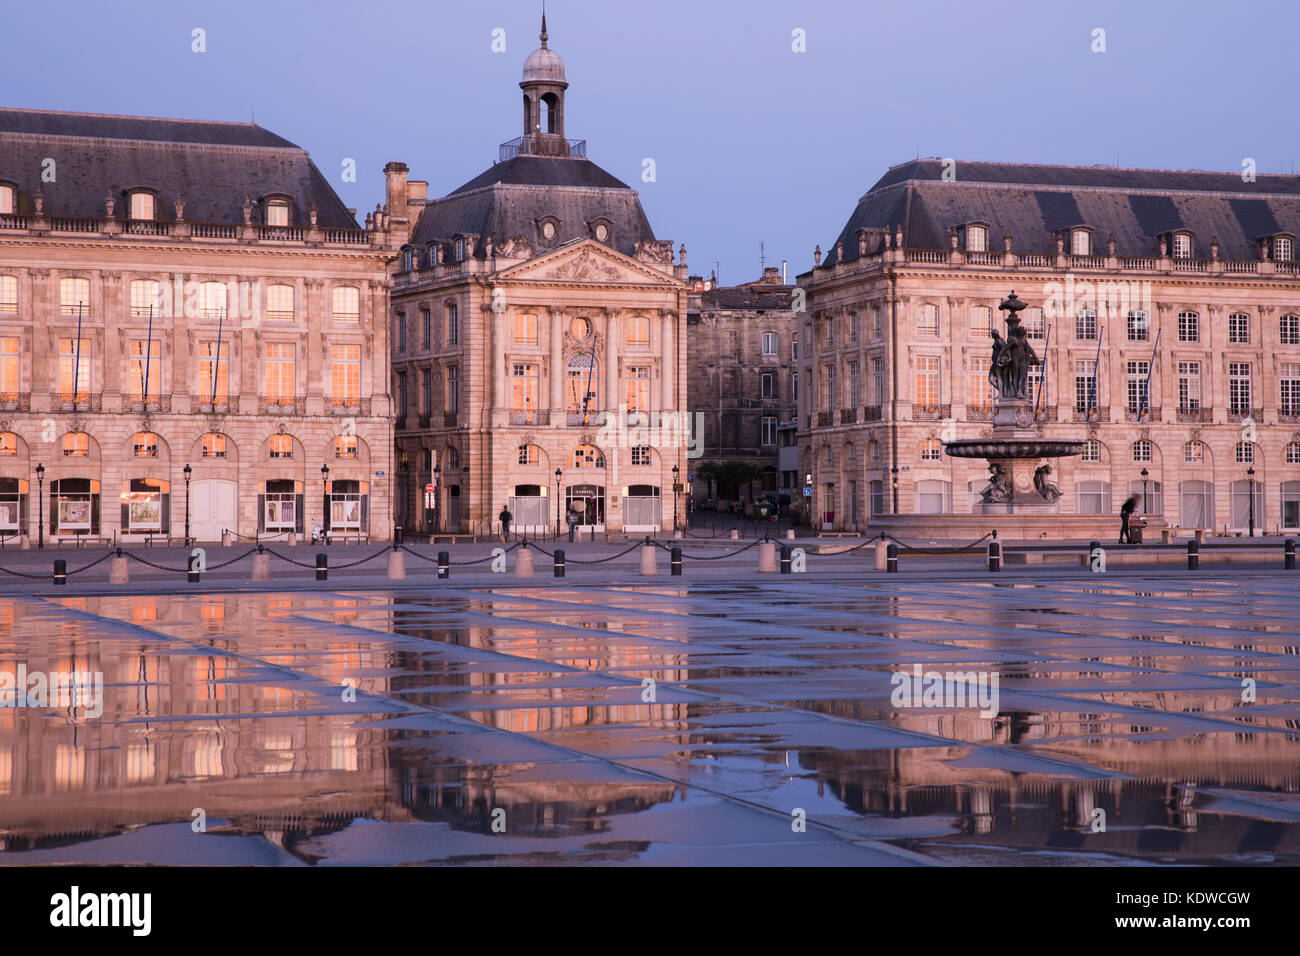 Miroir d'eau at dawn, Place de la Bourse, Bordeaux, Acquitaine, France Stock Photo